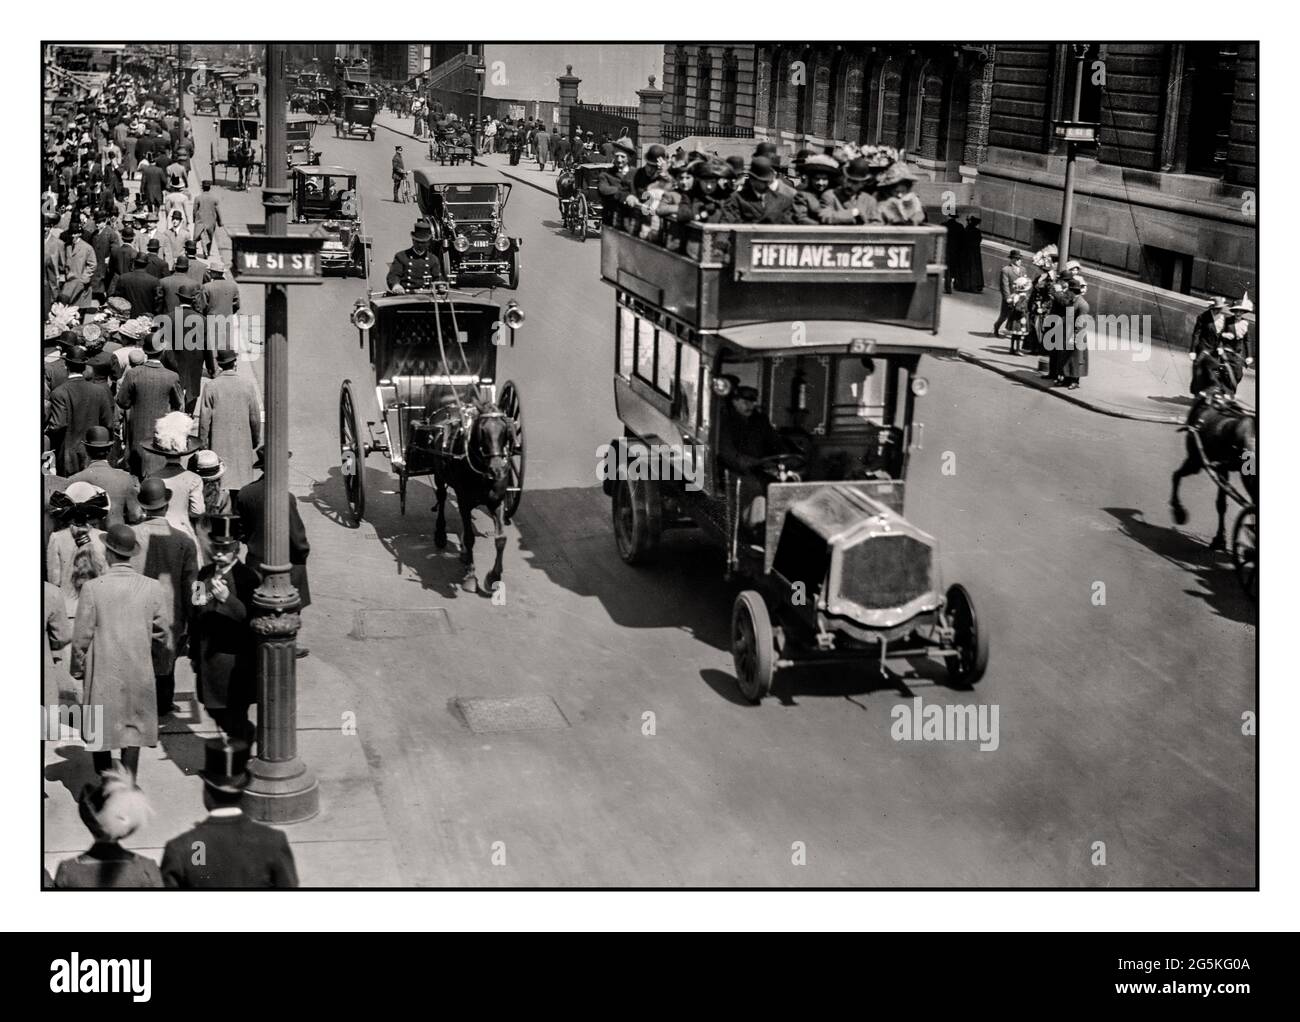 Das Archiv der New York 5th Avenue aus den 1870er Jahren transportiert historische Bilder von Pferdefahrzeugen und motorisierten Fahrzeugen, einschließlich eines Autobusses, auf der 5th Avenue mit gut gekleideten, stilvollen Menschenmassen, die auf dem Bürgersteig in New York Manhattan, USA, spazieren Stockfoto